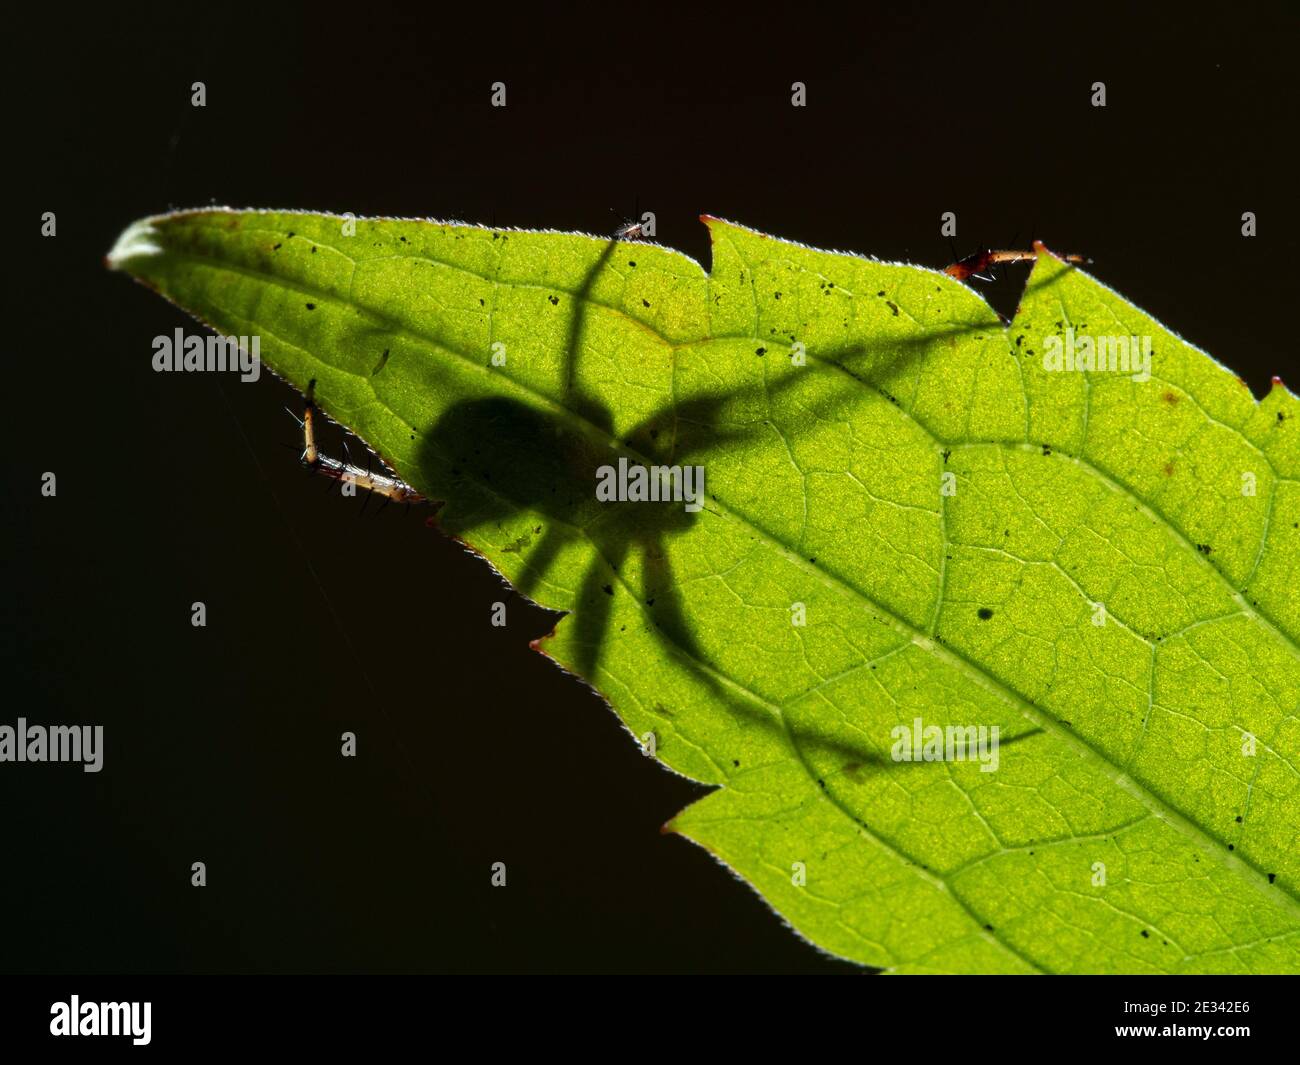 Foto retroiluminada de una araña orbitadora masculina que acecha detrás de una hoja verde en el pantano de la Bahía de Boundary, Ladner, Delta, British Columbia, Canadá Foto de stock